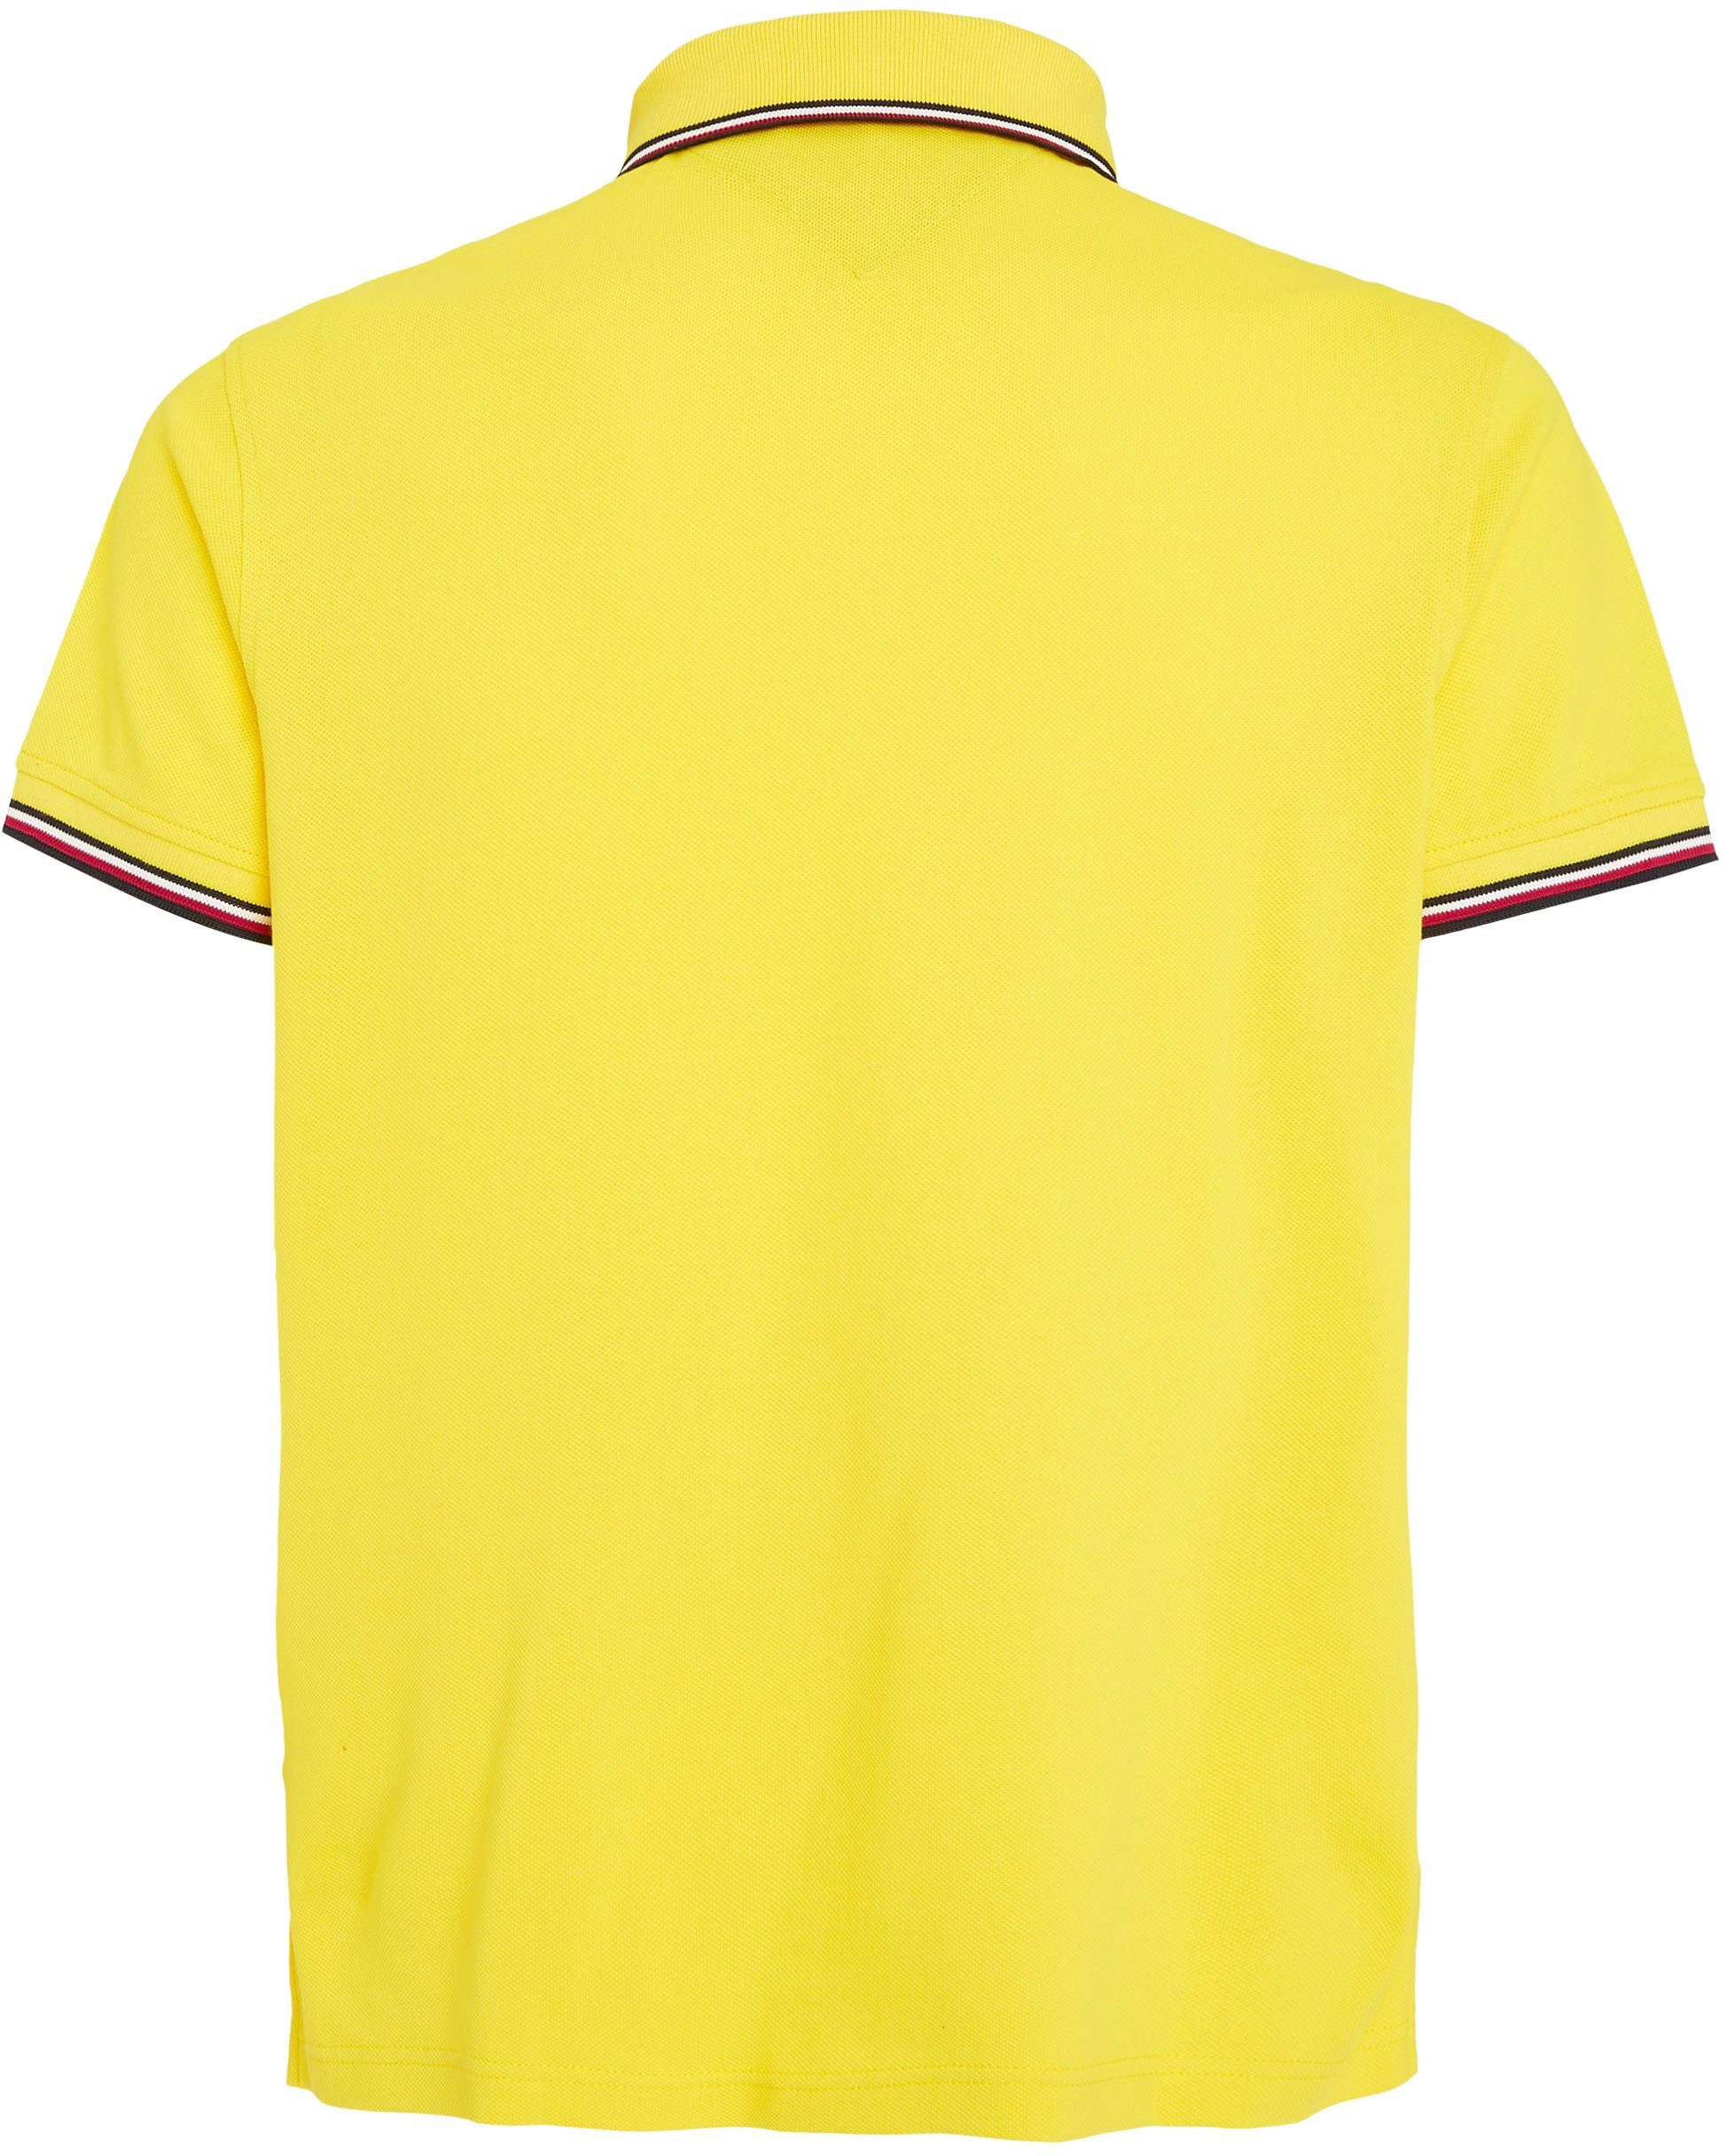 Tommy Hilfiger Poloshirt yellow POLO TH-Farben SLIM 1985 TIPPED und mit Kragen an RWB Ärmel